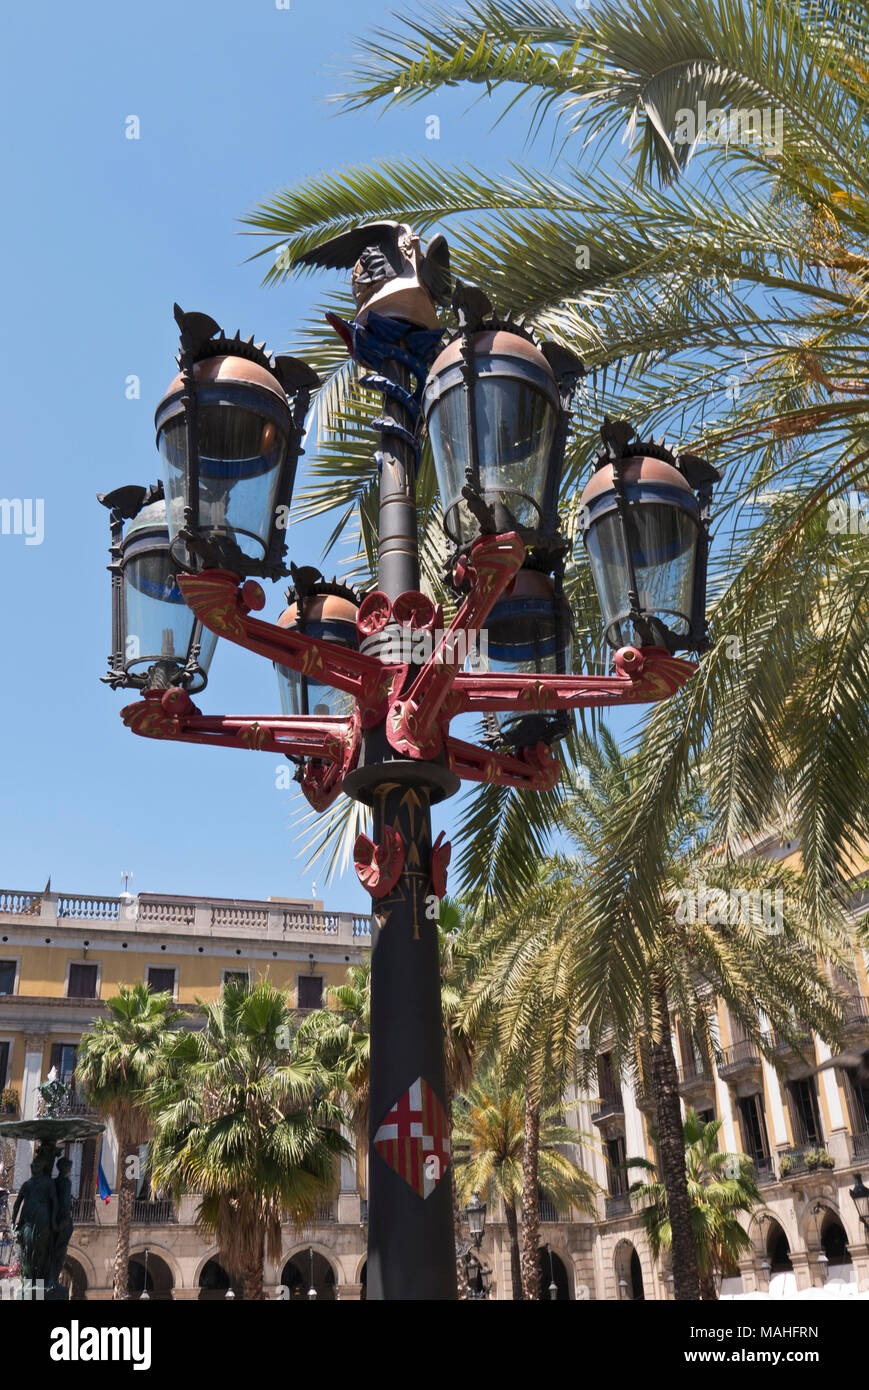 Antoni Gaudi Lamp post in Placa Reial, Barcelona, Spain. Stock Photo